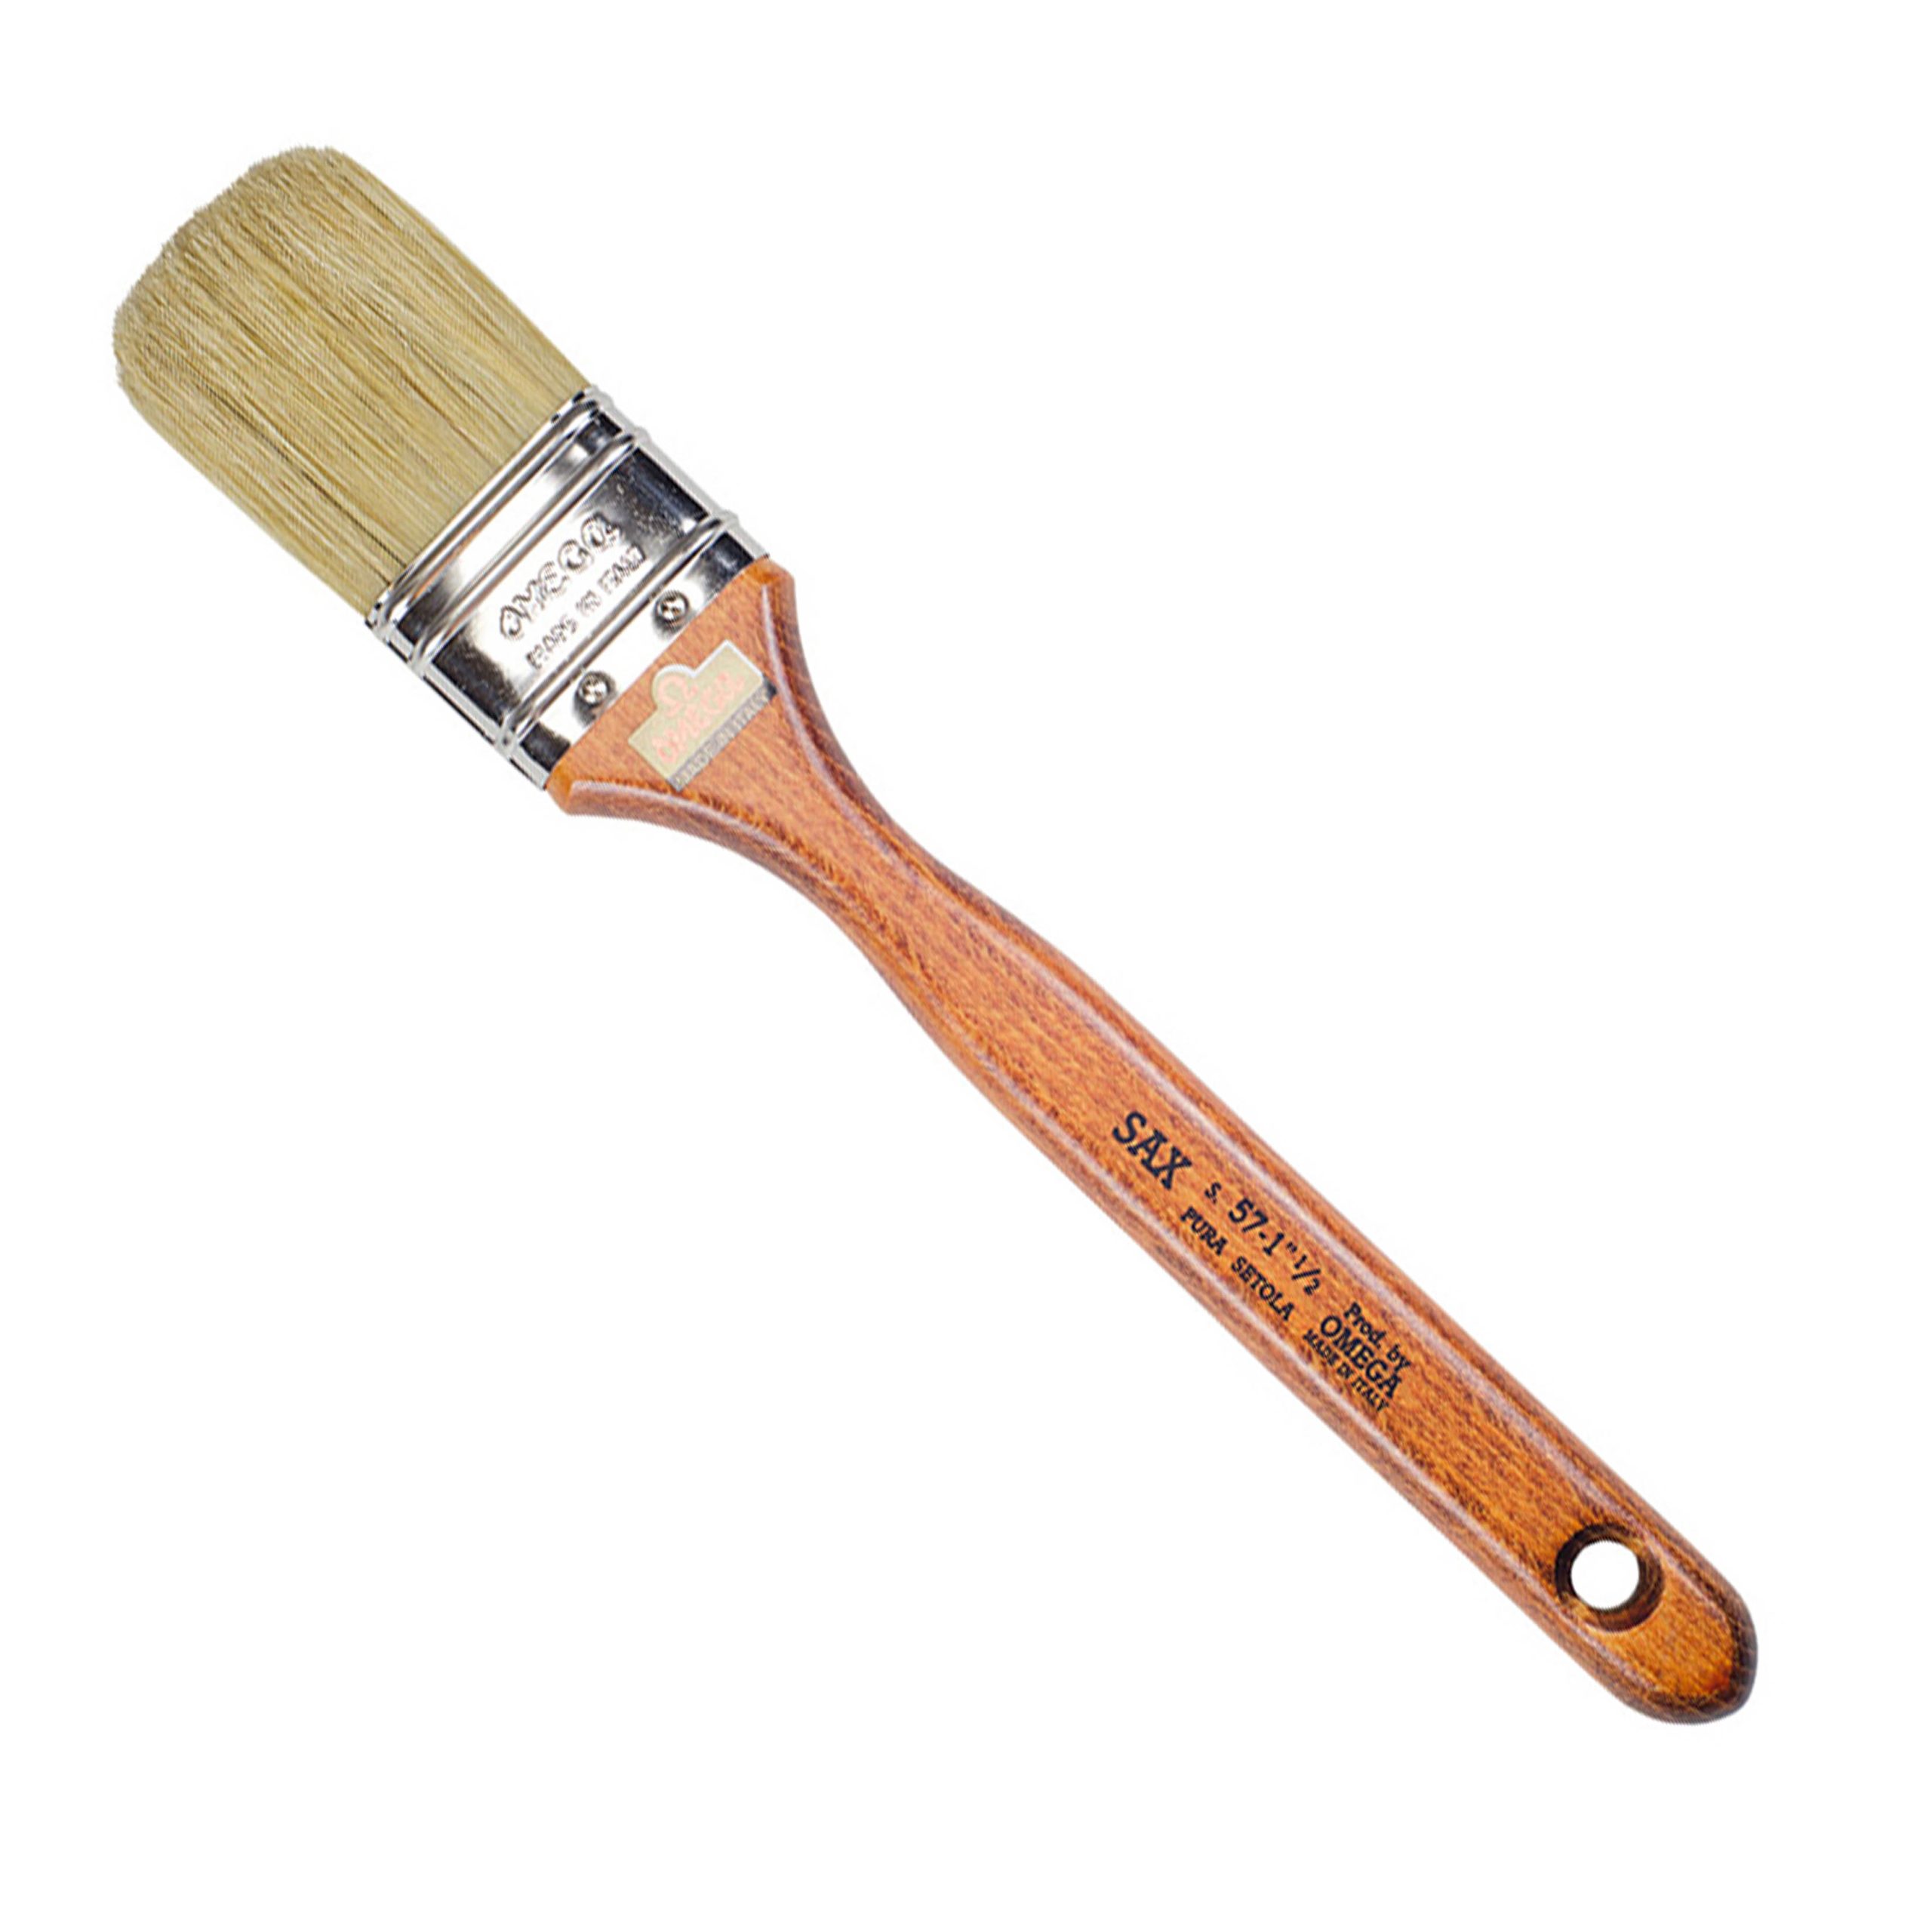 Omega : Brush S.57 size 1 1/2 inch